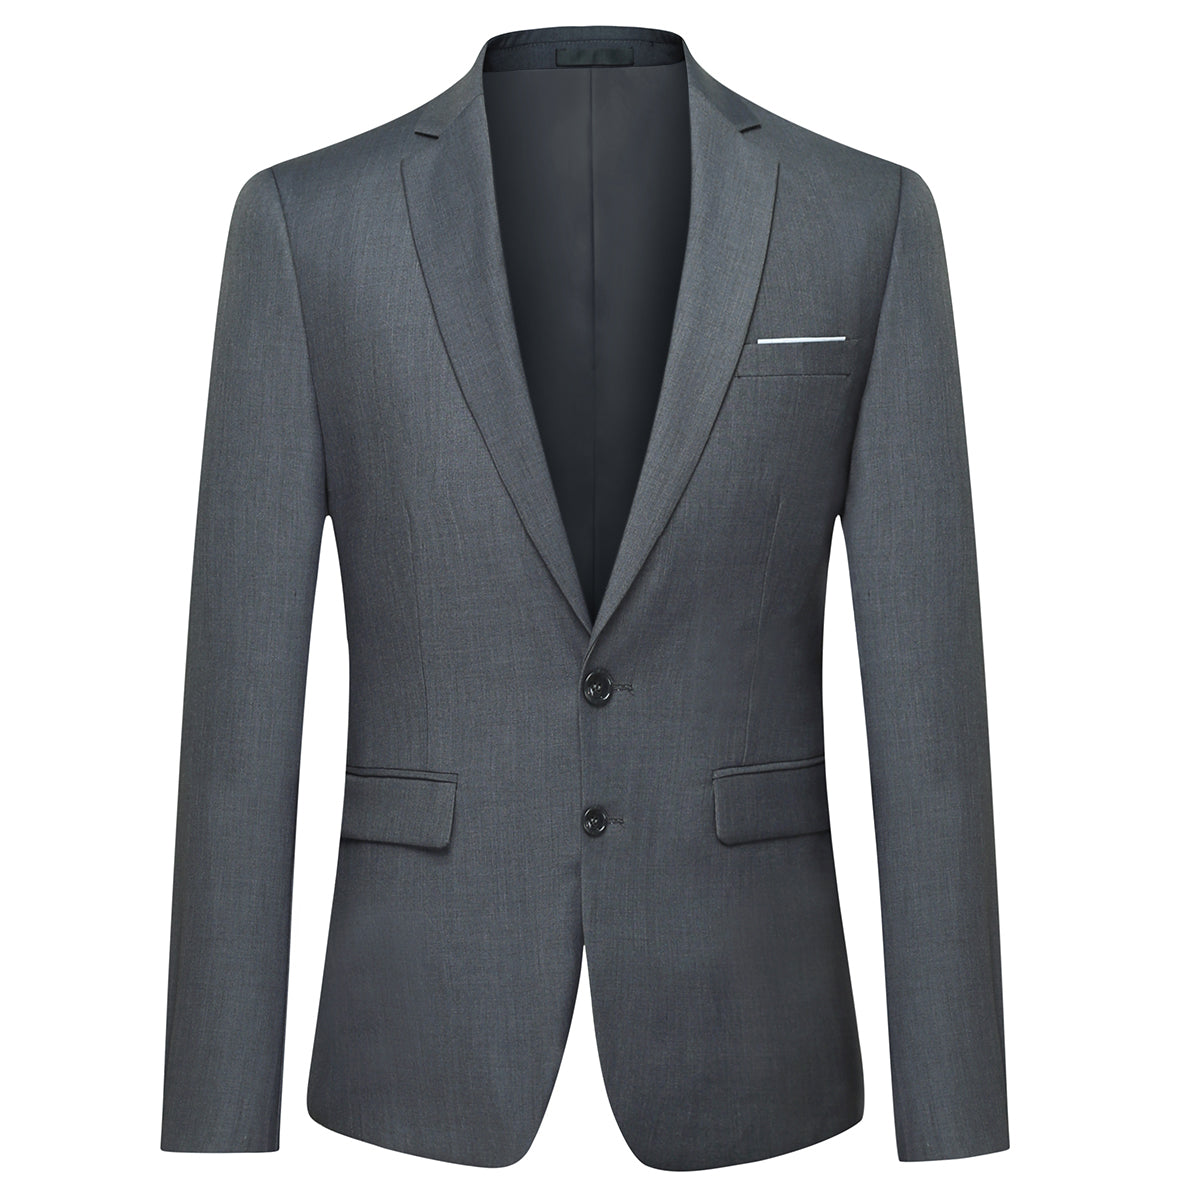 Men Suit 2 Piece, Grey Suits for Men, Slim Fit Suits, One Button